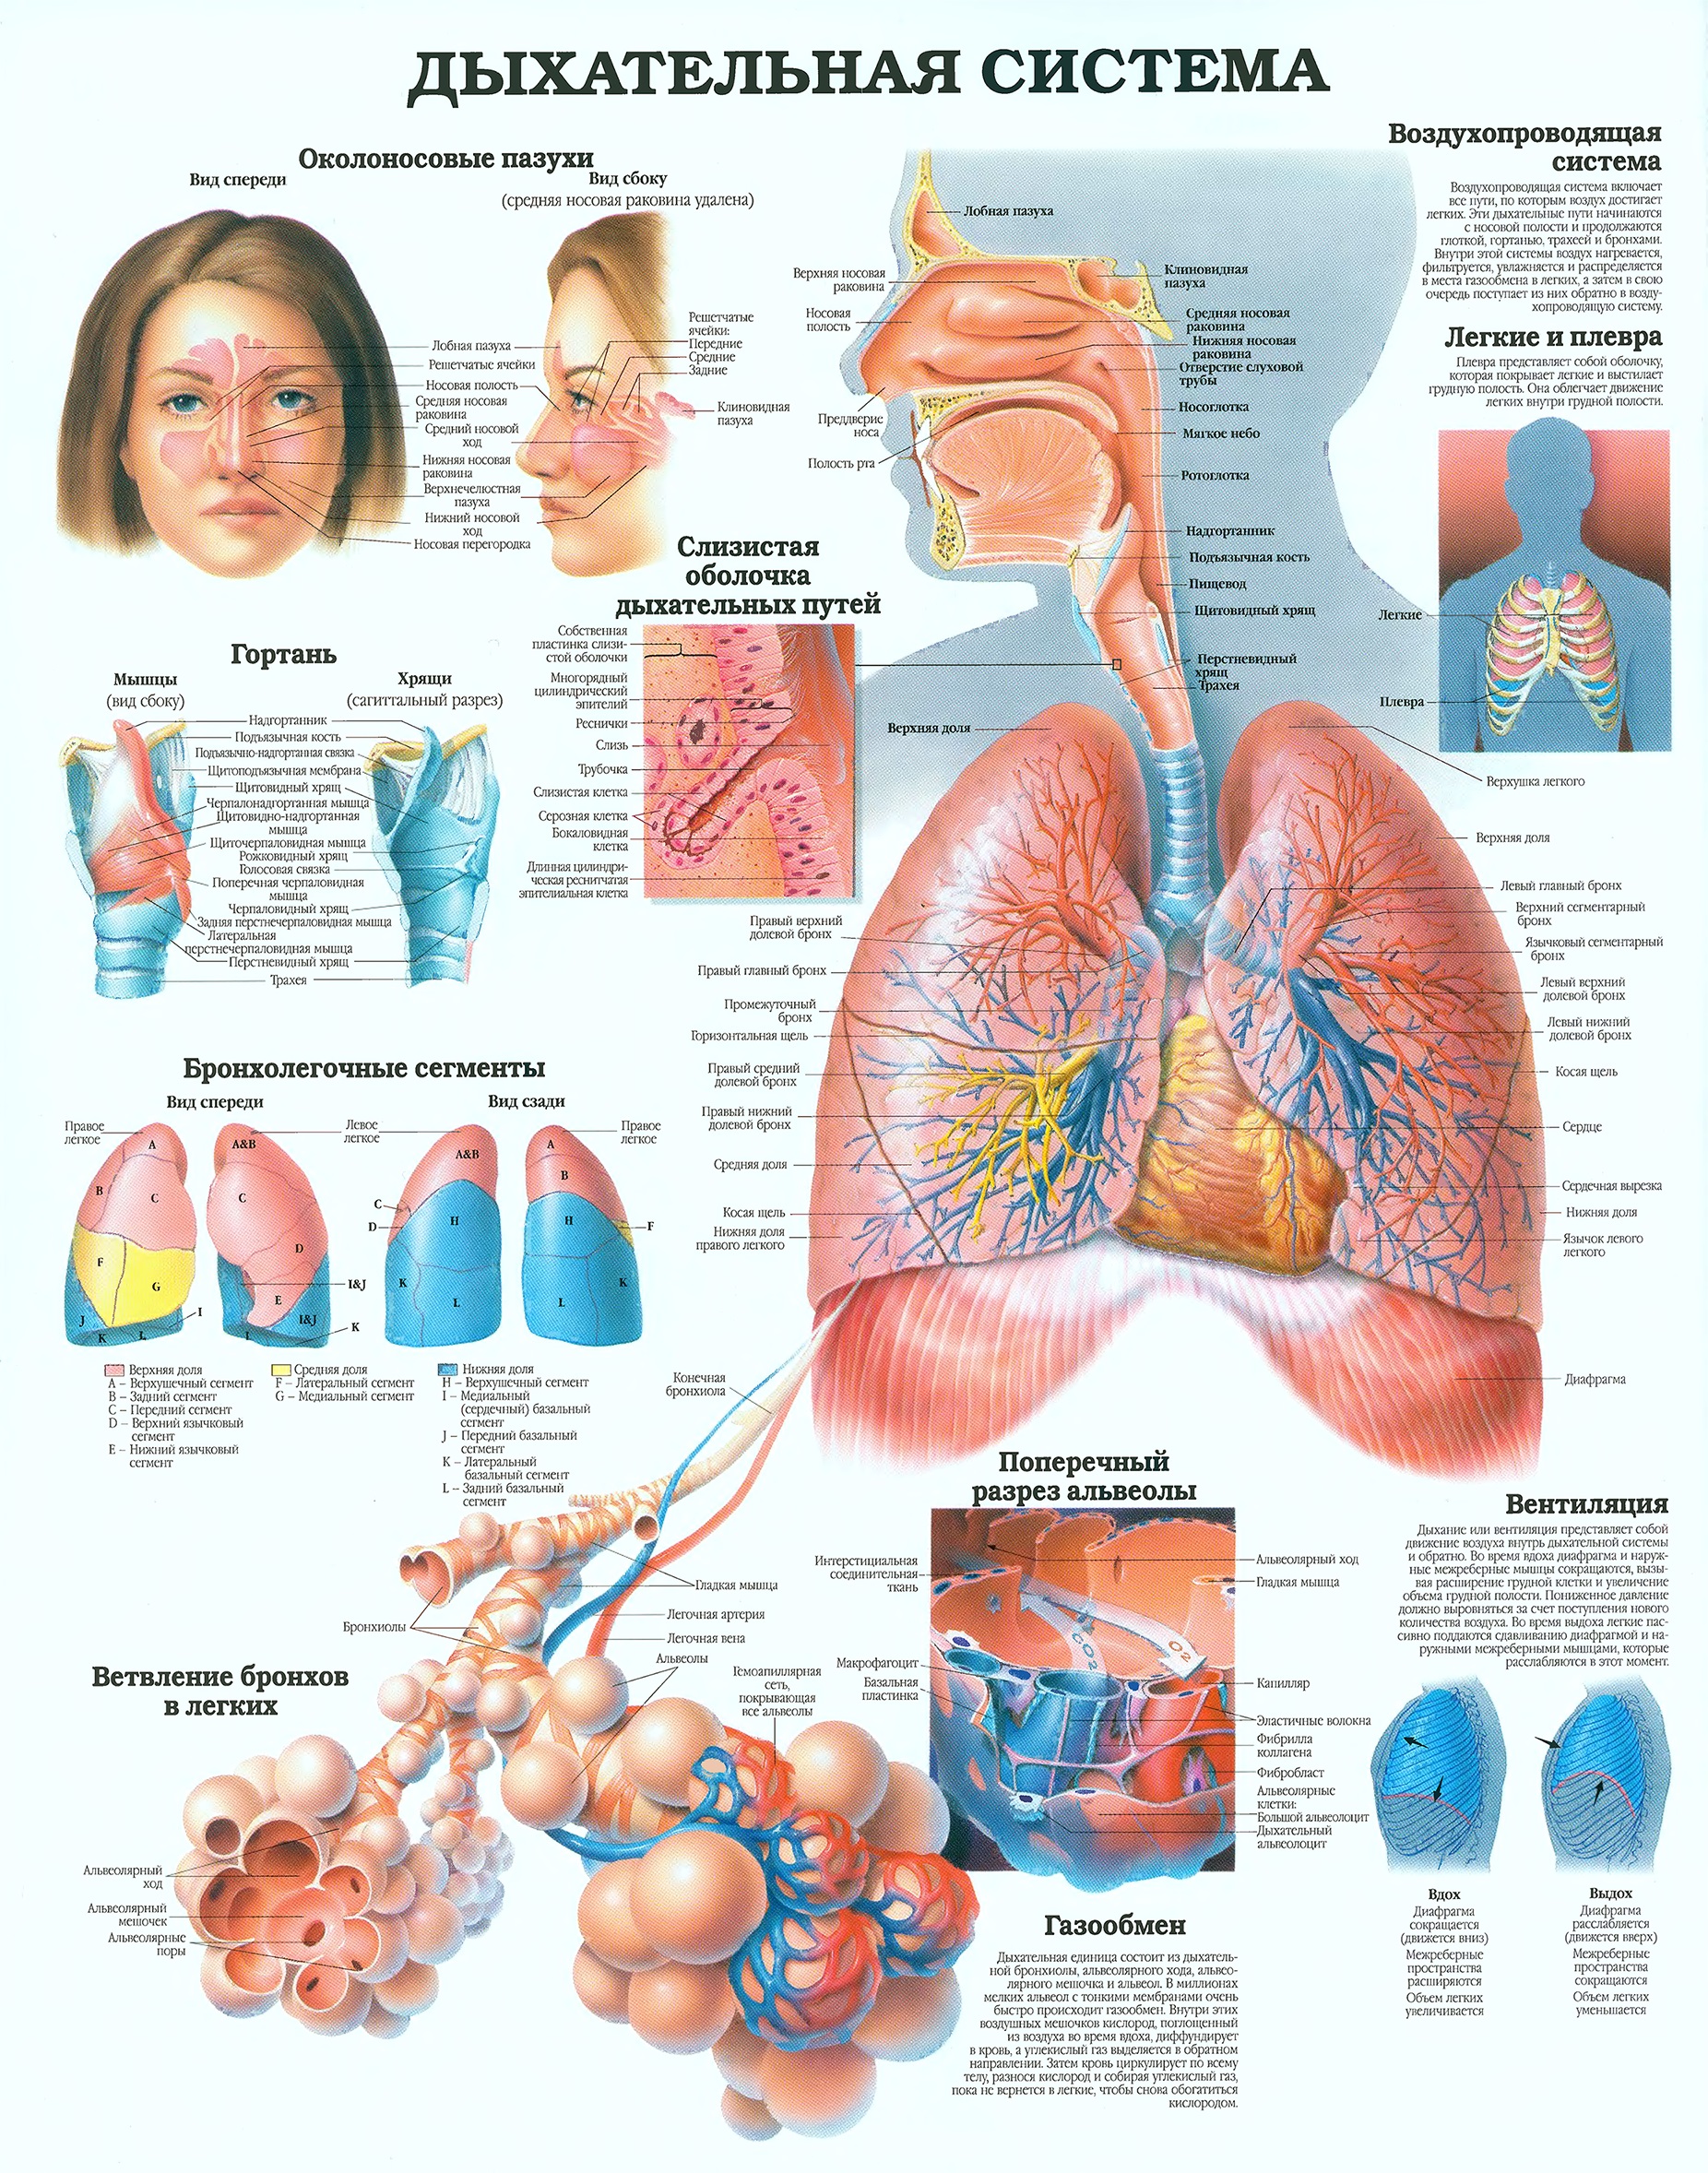 Дыхательная система человека анатомический атлас